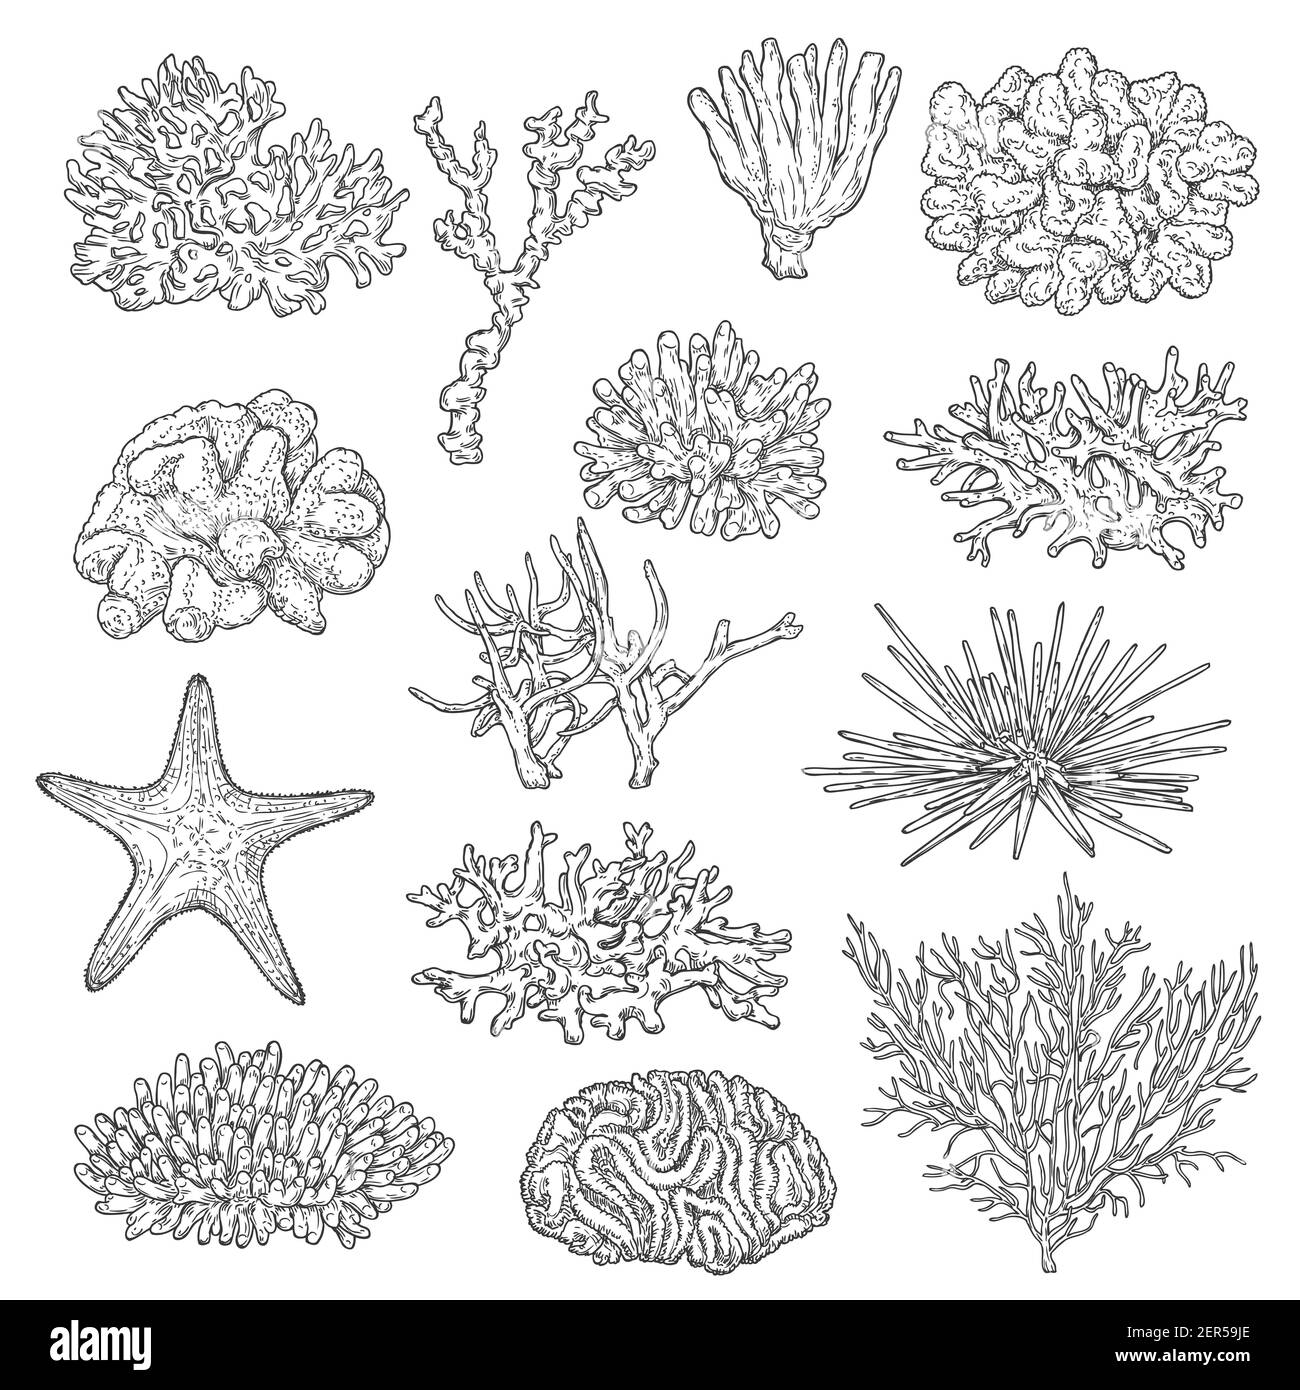 Colonie di coralli marini e vettori di schizzi di stelle marine. Fauna marina, profondità oceanica e fondali marini vita della barriera corallina, stelle e specie di ricci marini. Nero e stellare, acro Illustrazione Vettoriale